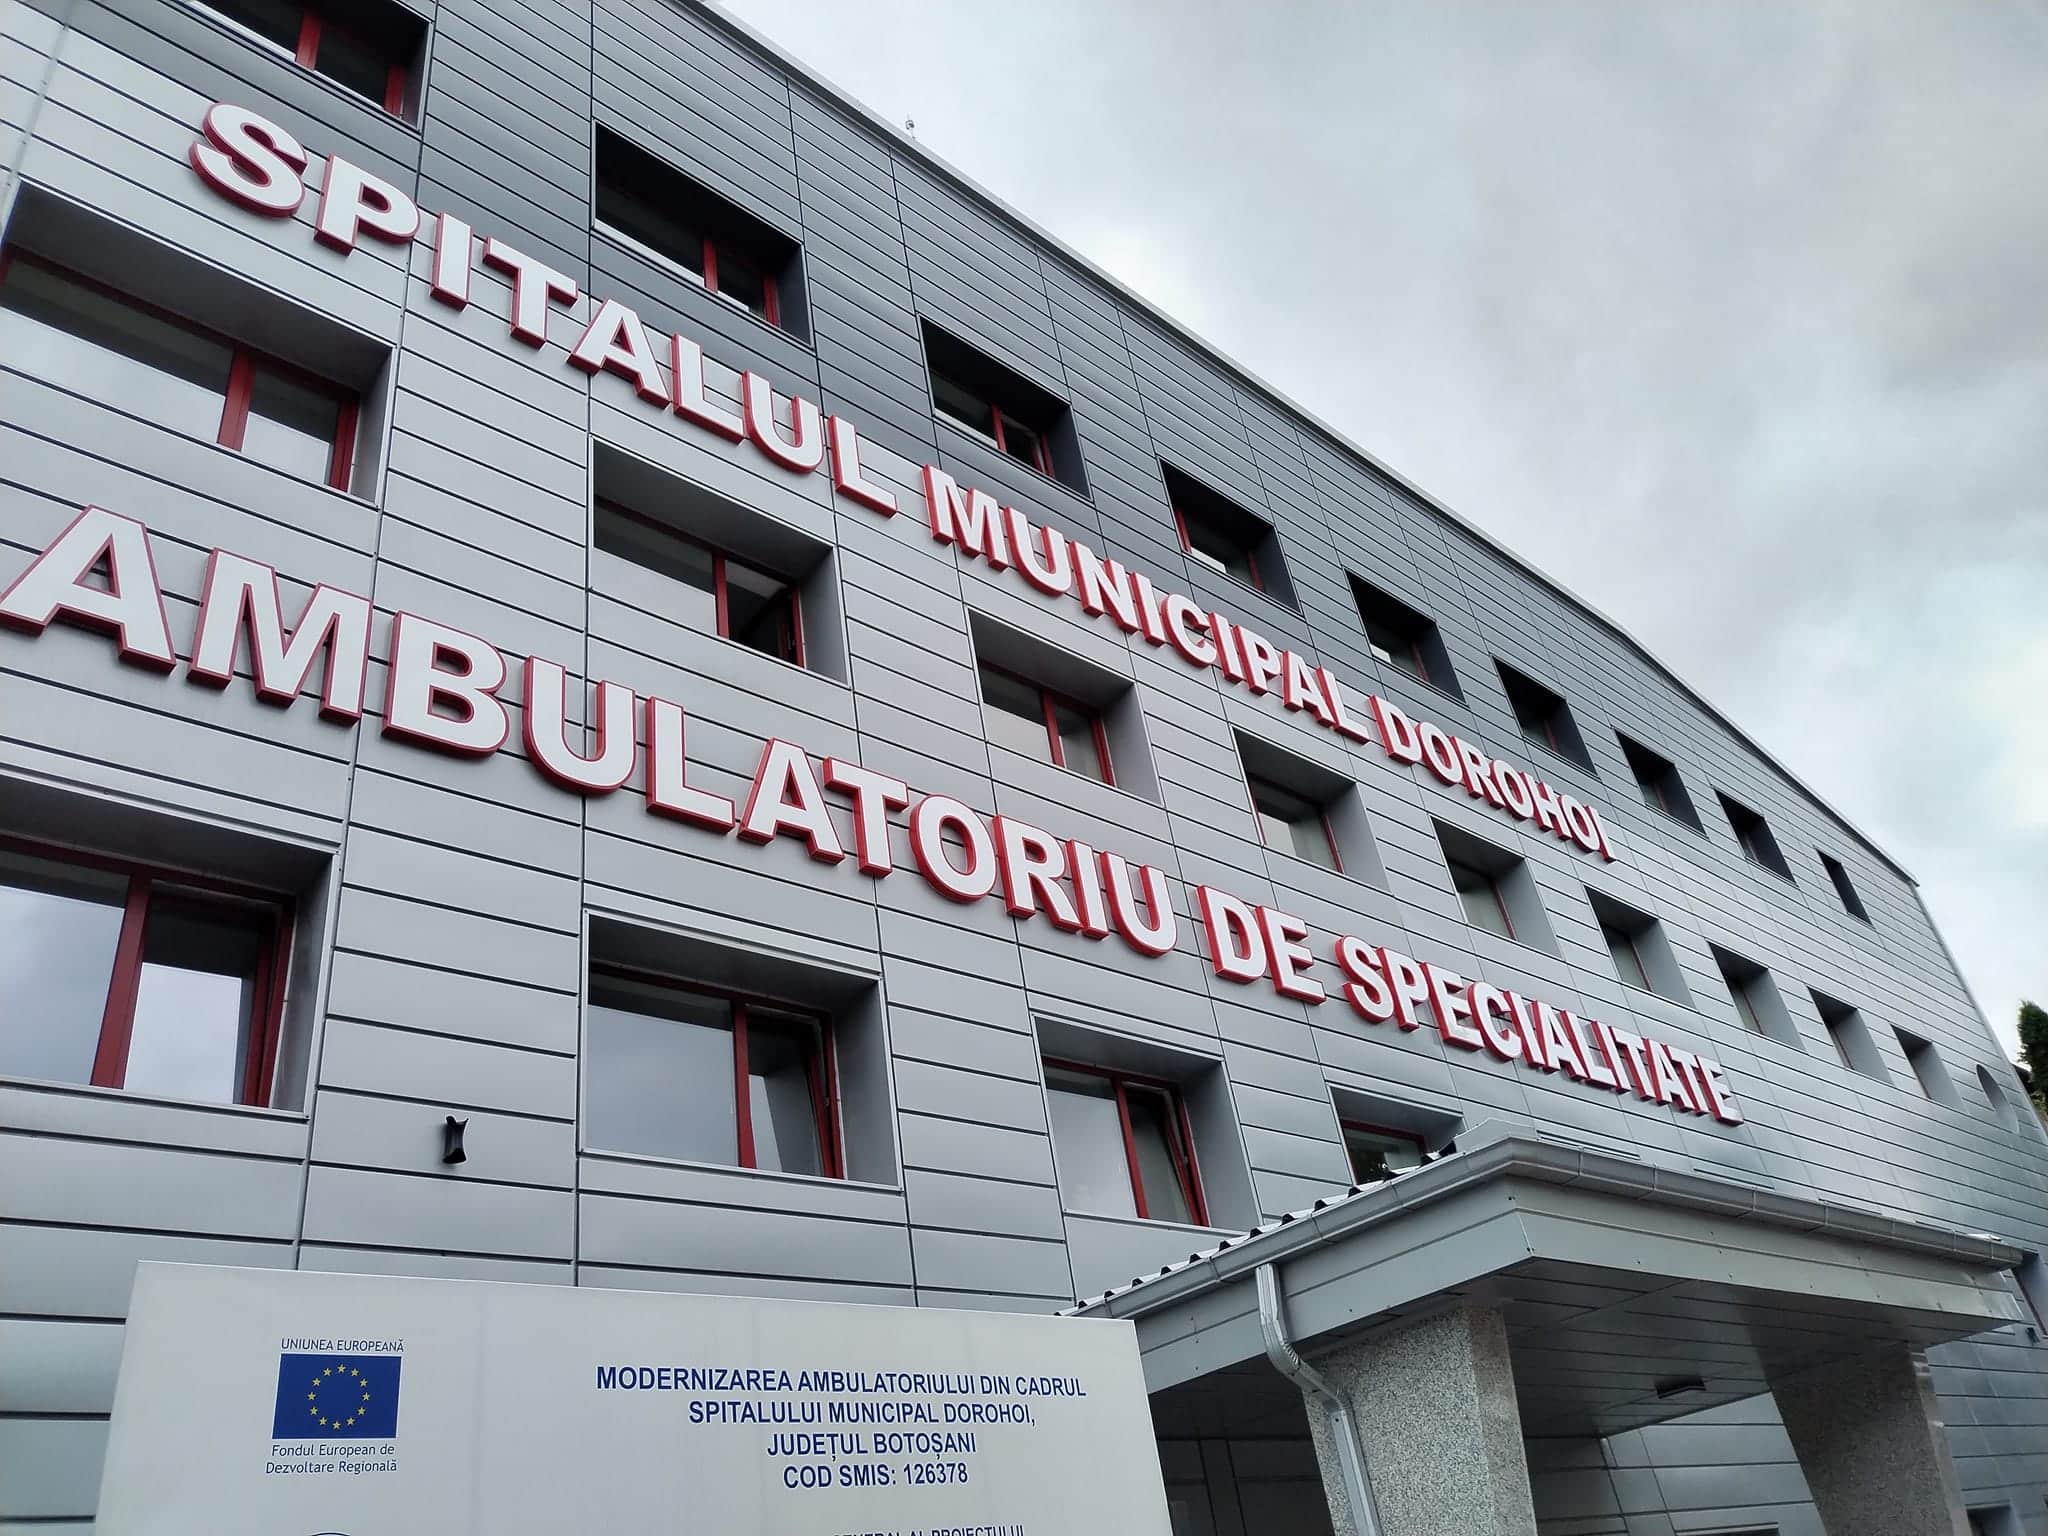 10-milioane-de-euro-investiti-in-noul-ambulatoriu-din-municipiul-dorohoi